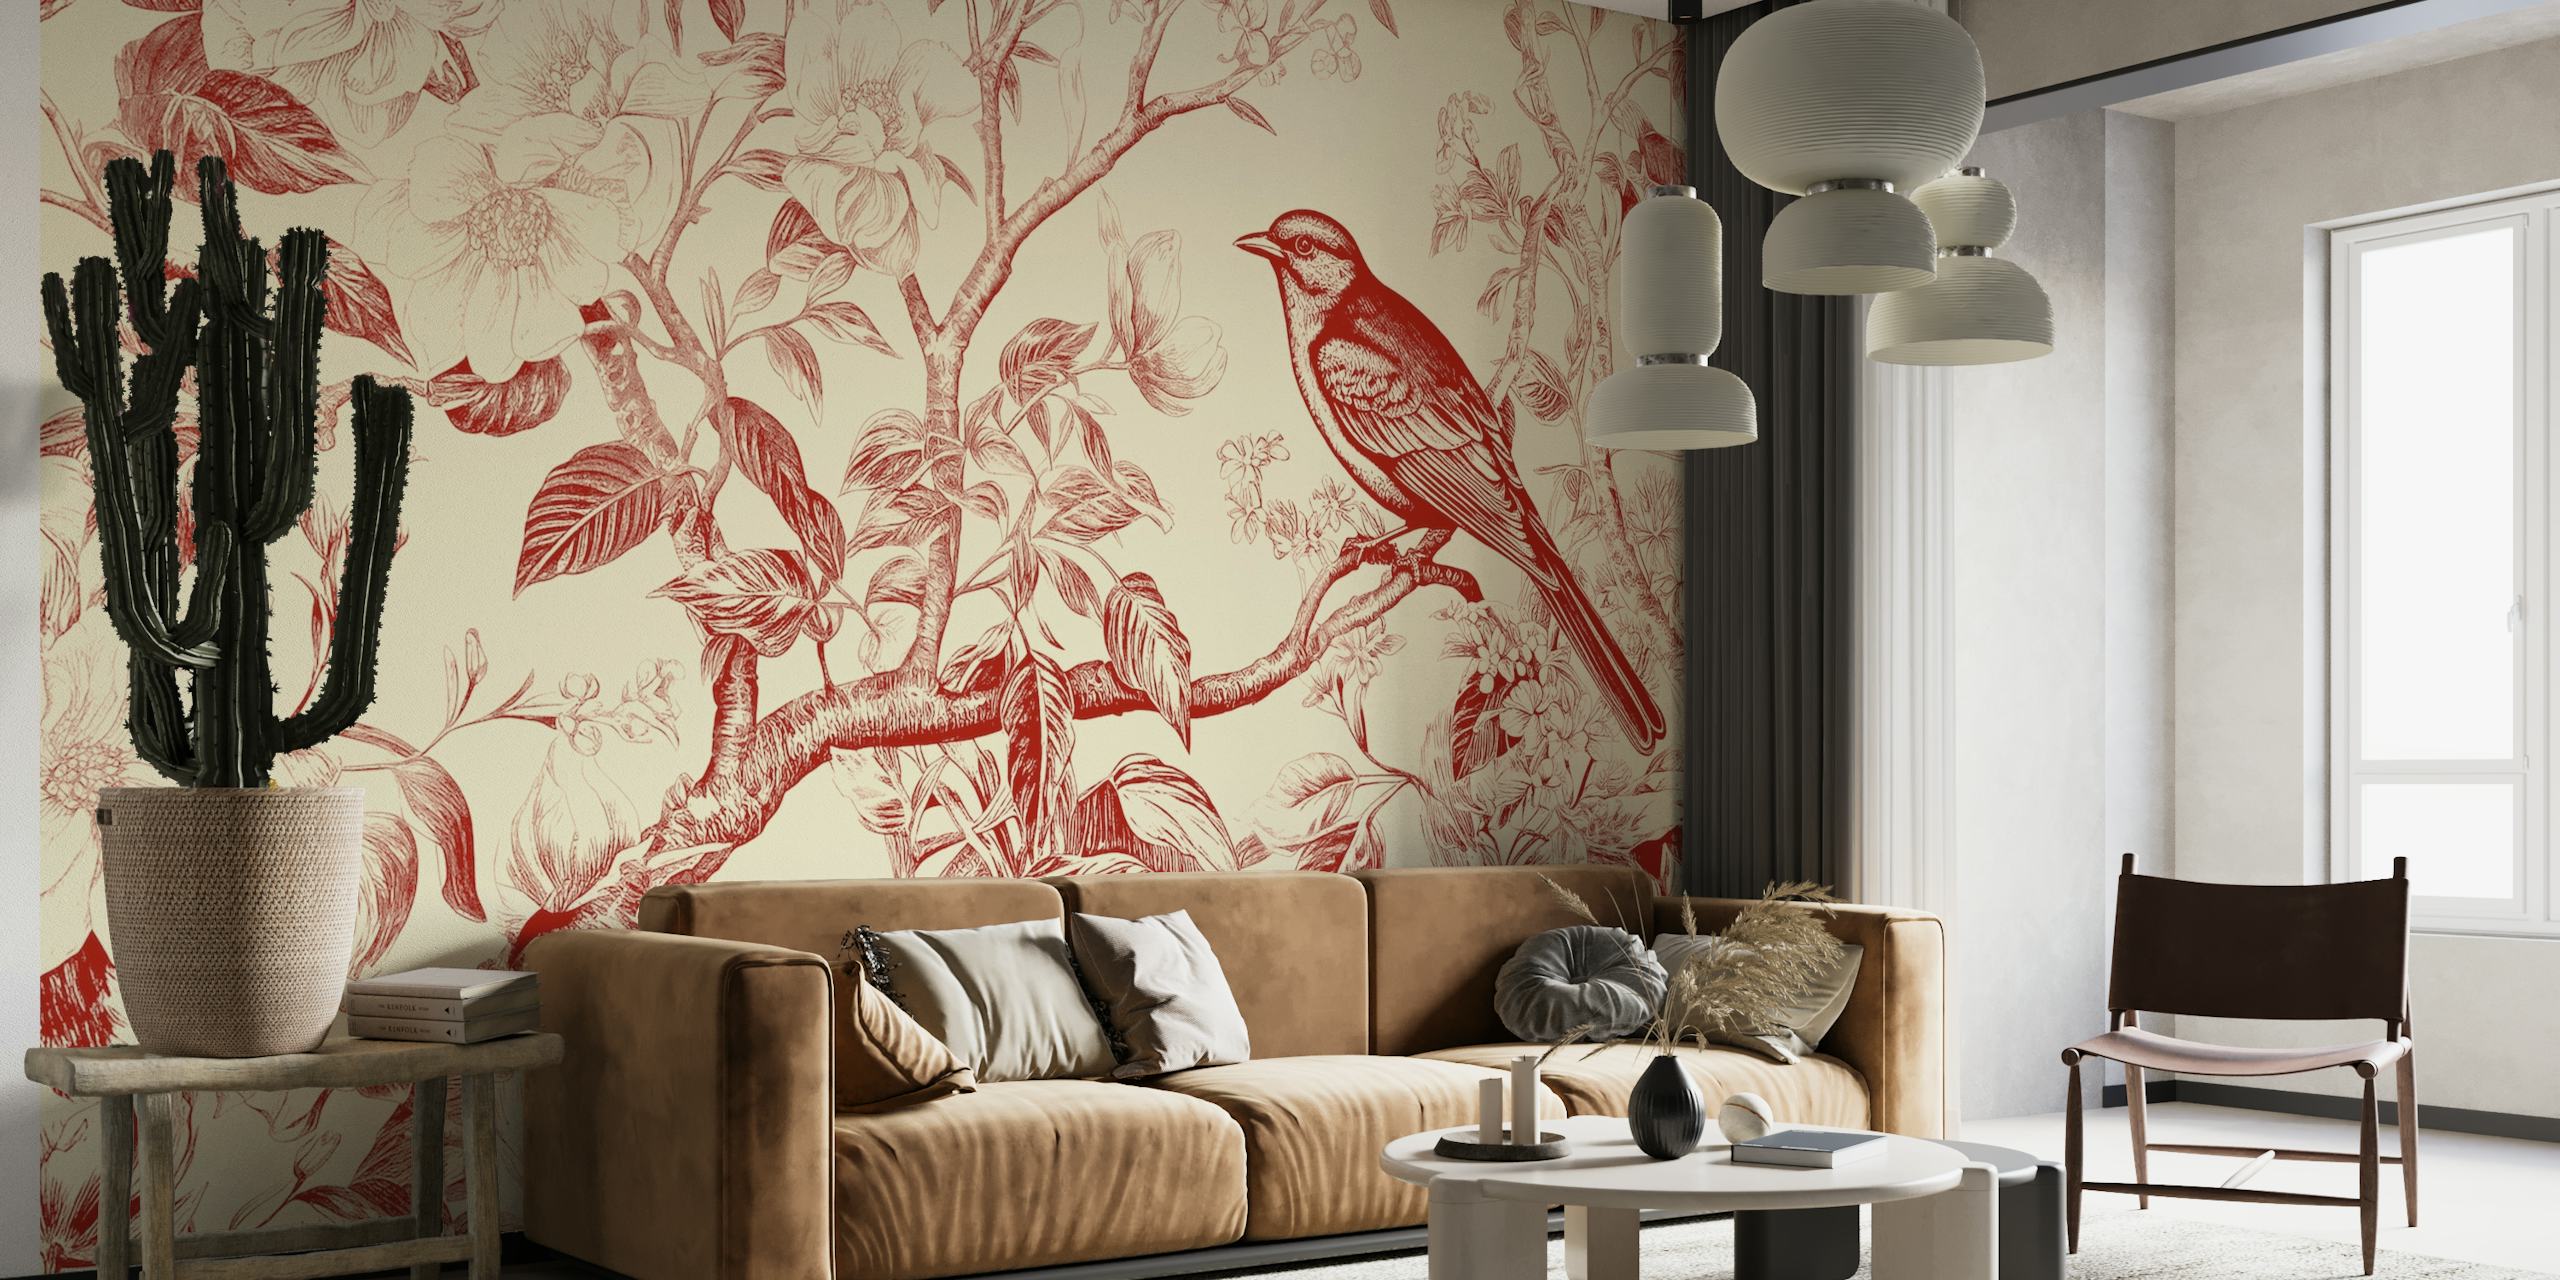 Classic Red Bird wallpaper